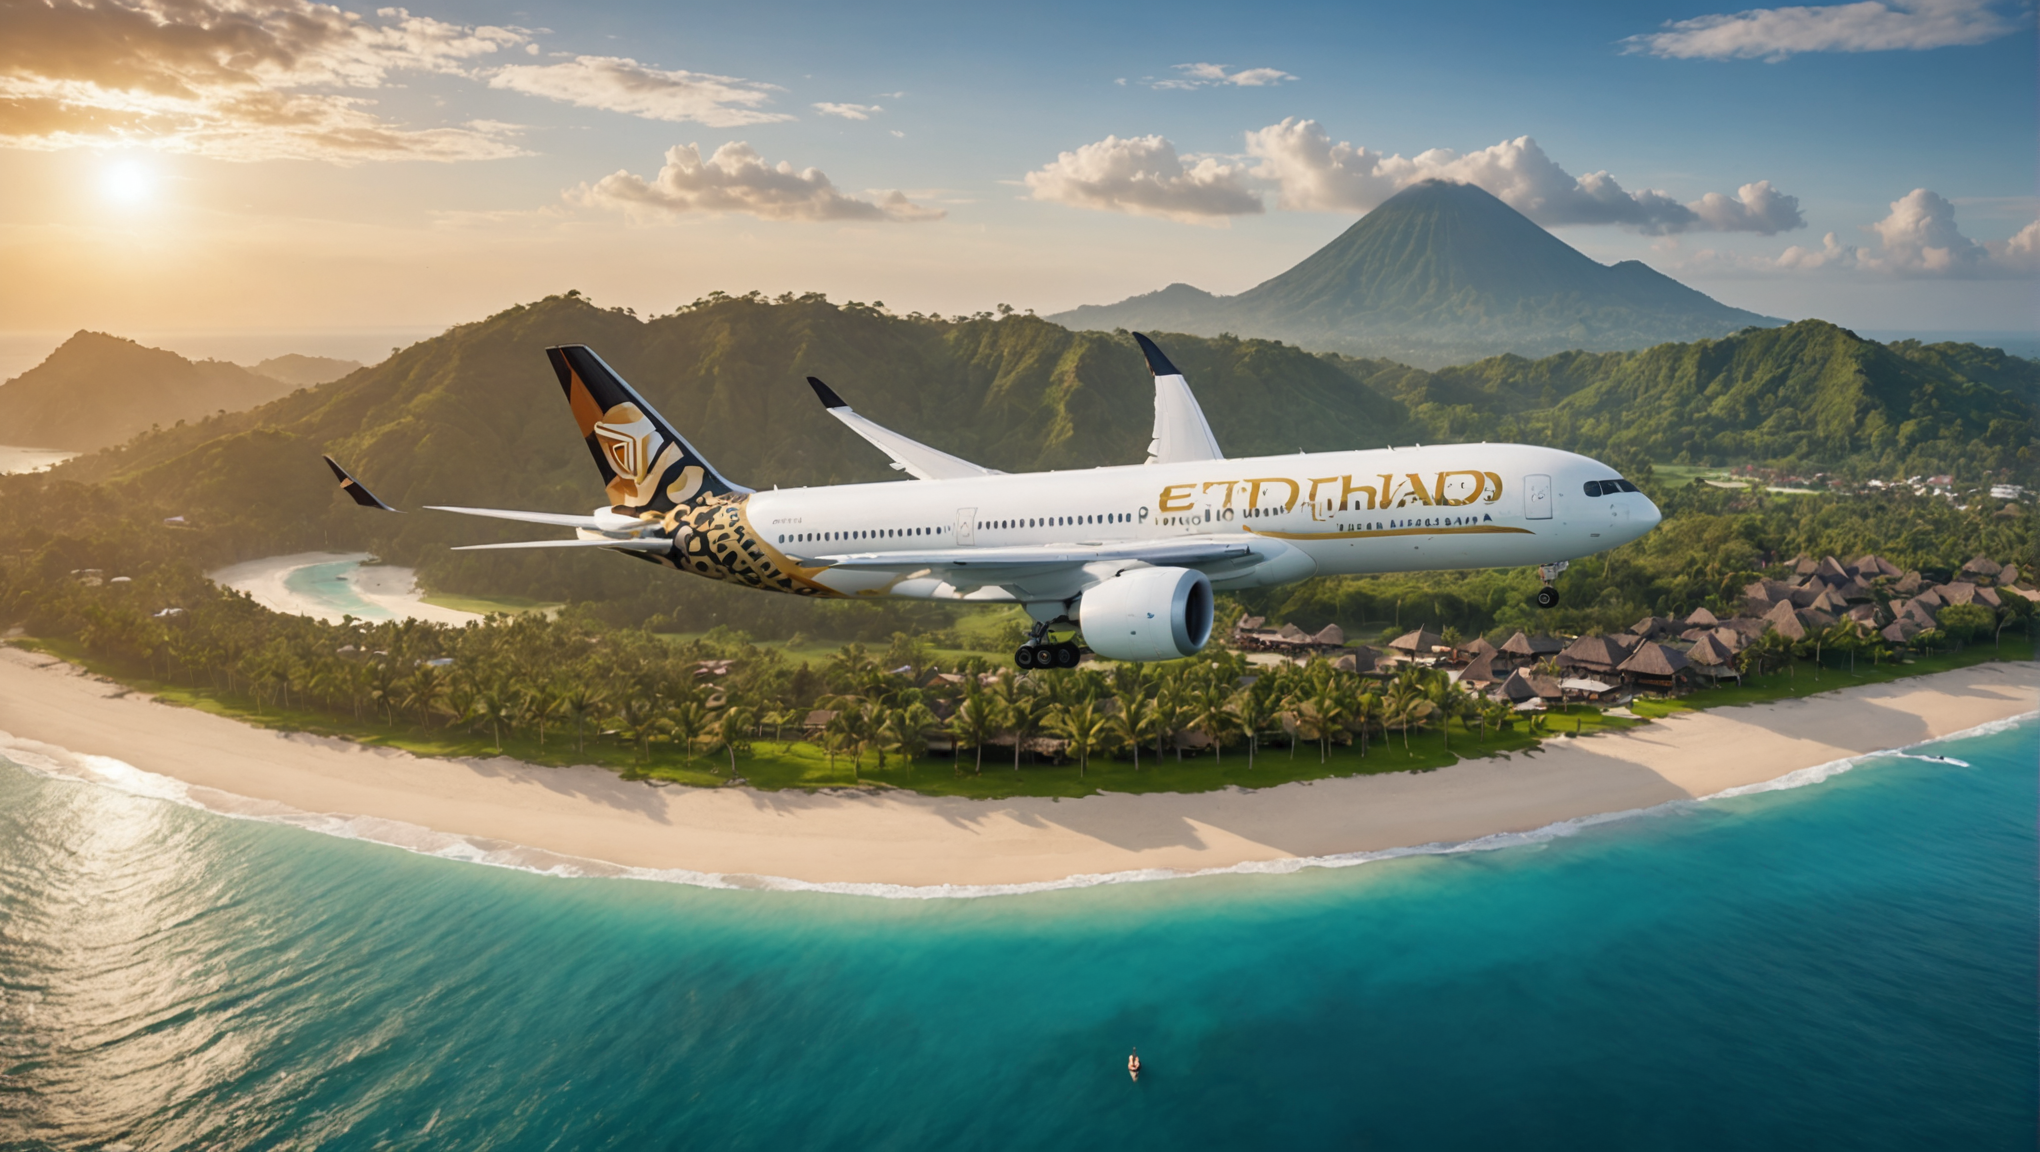 découvrez le nouveau vol direct d'etihad airways vers la magnifique île de bali, réservez vos billets dès maintenant et préparez-vous pour un voyage inoubliable.